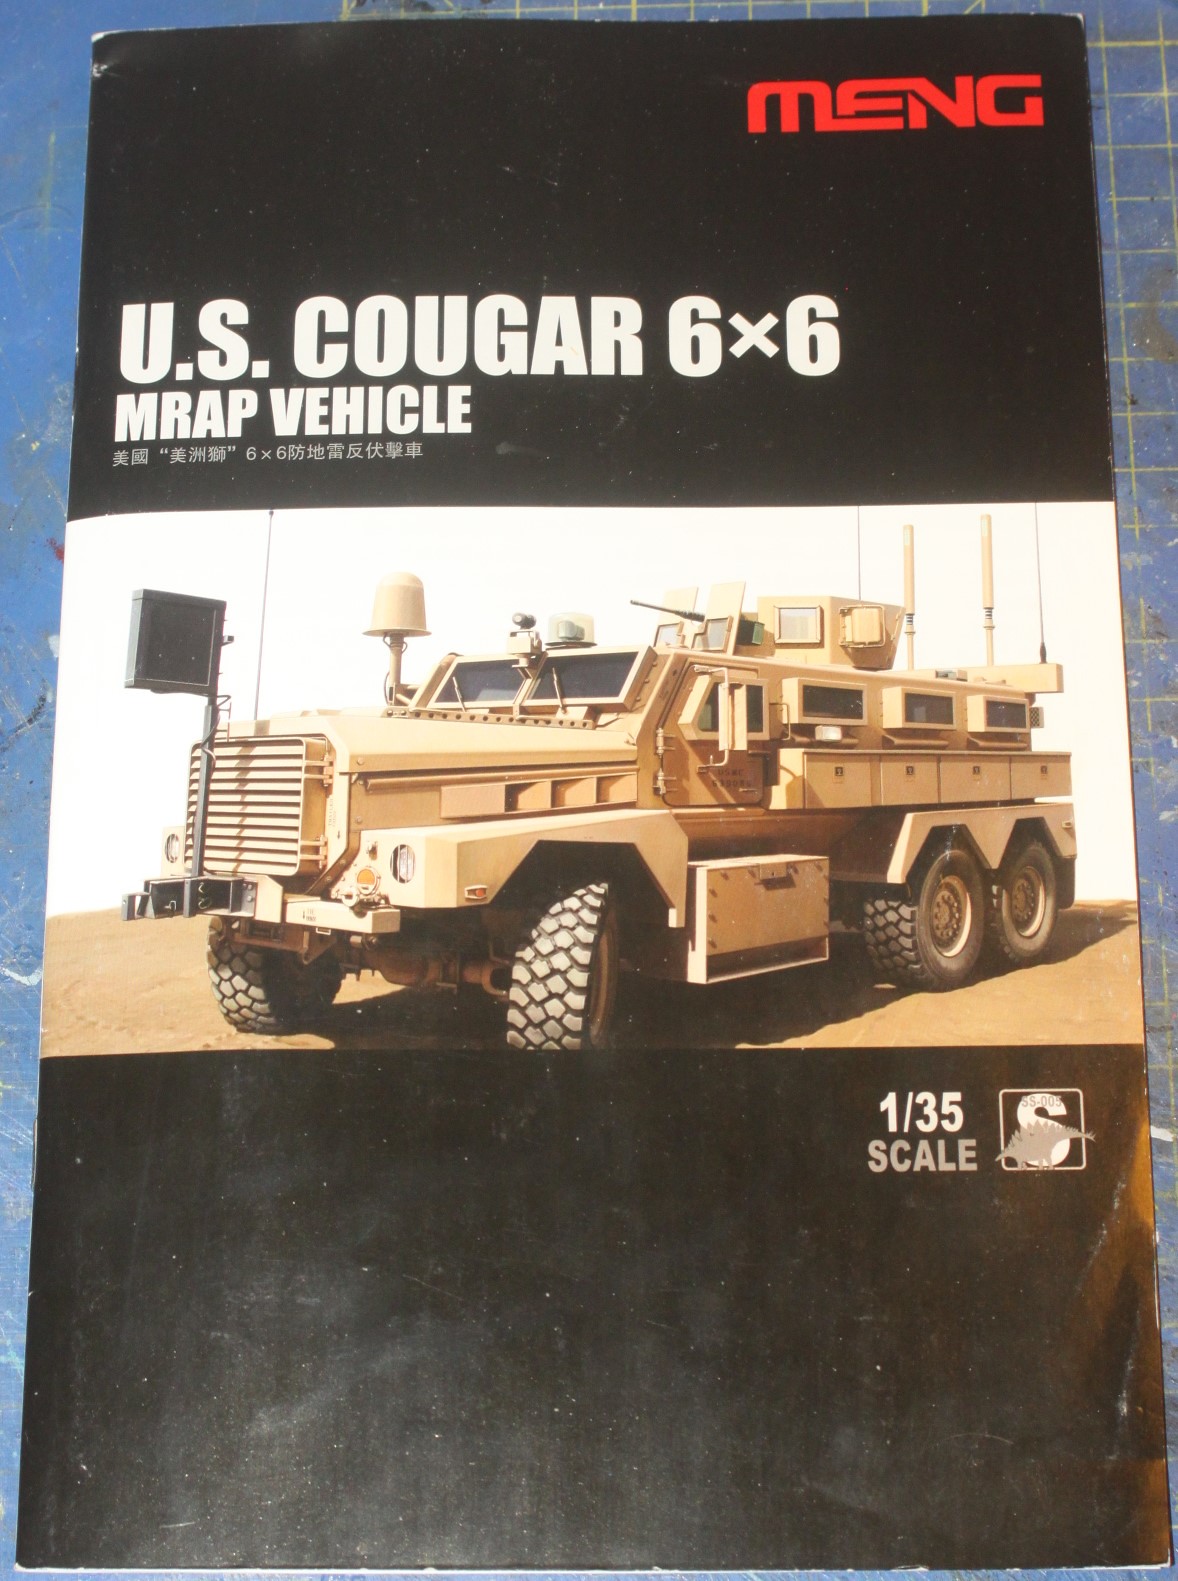 Cougar 6x6 MRAP Vehicle, MENG 1/35 52917108778_6646f8054d_h